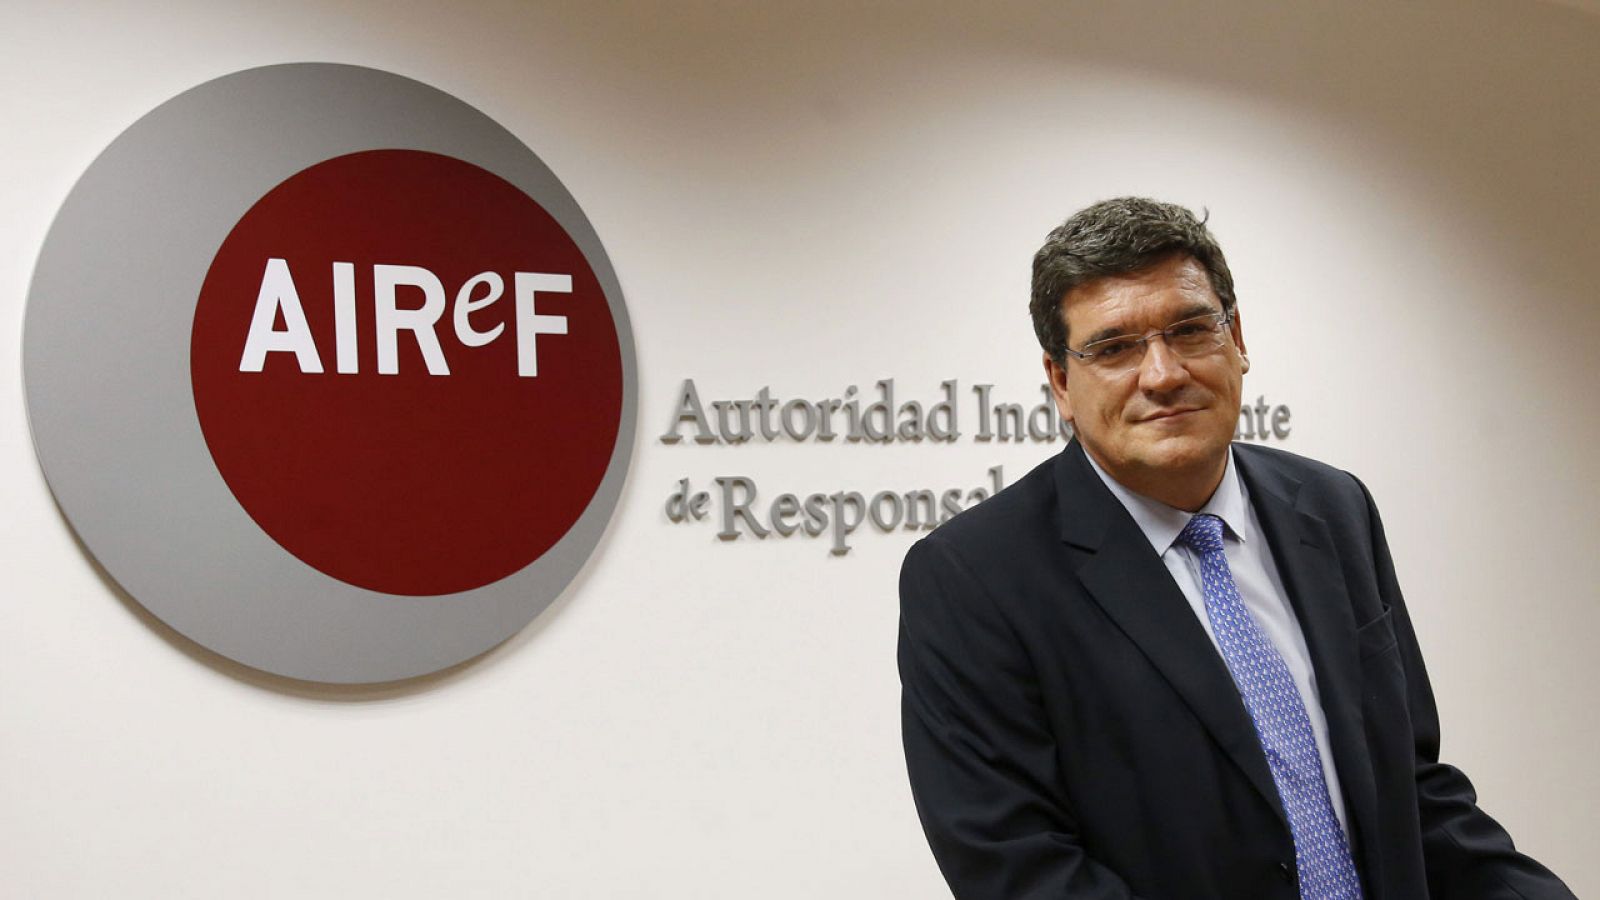 El presidente de la Autoridad Independiente de Responsabilidad Fiscal (AIReF), José Luis Escrivá, en una foto de archivo